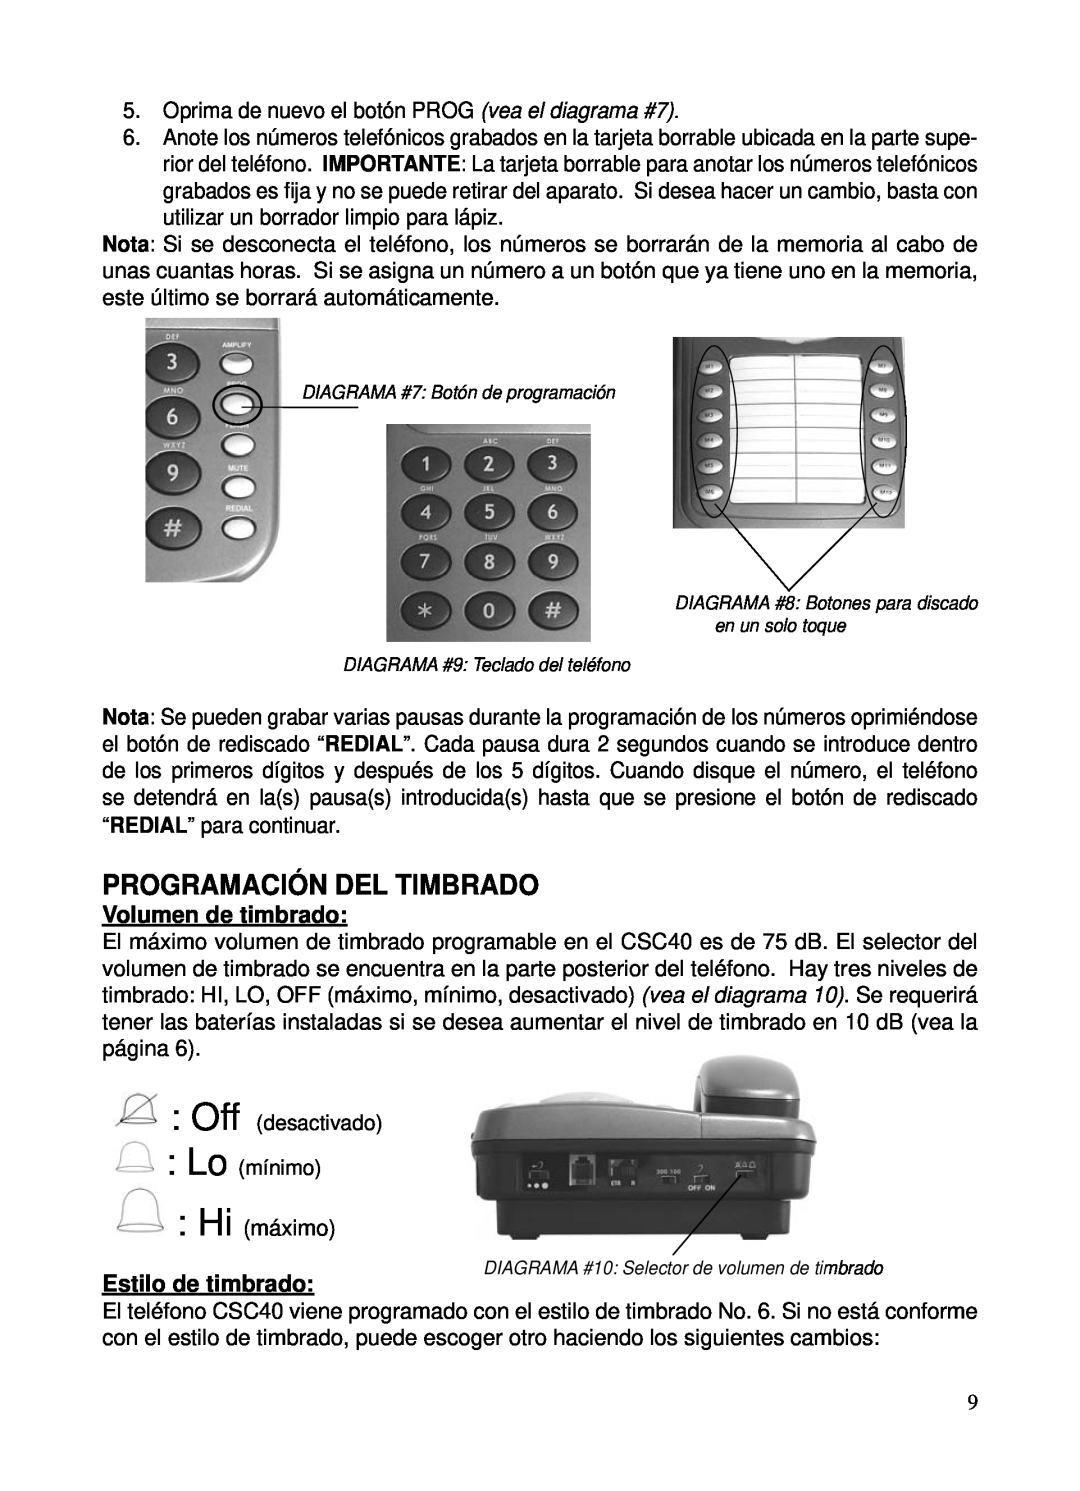 ClearSounds CSC40 user manual Programación Del Timbrado, Volumen de timbrado, Estilo de timbrado 